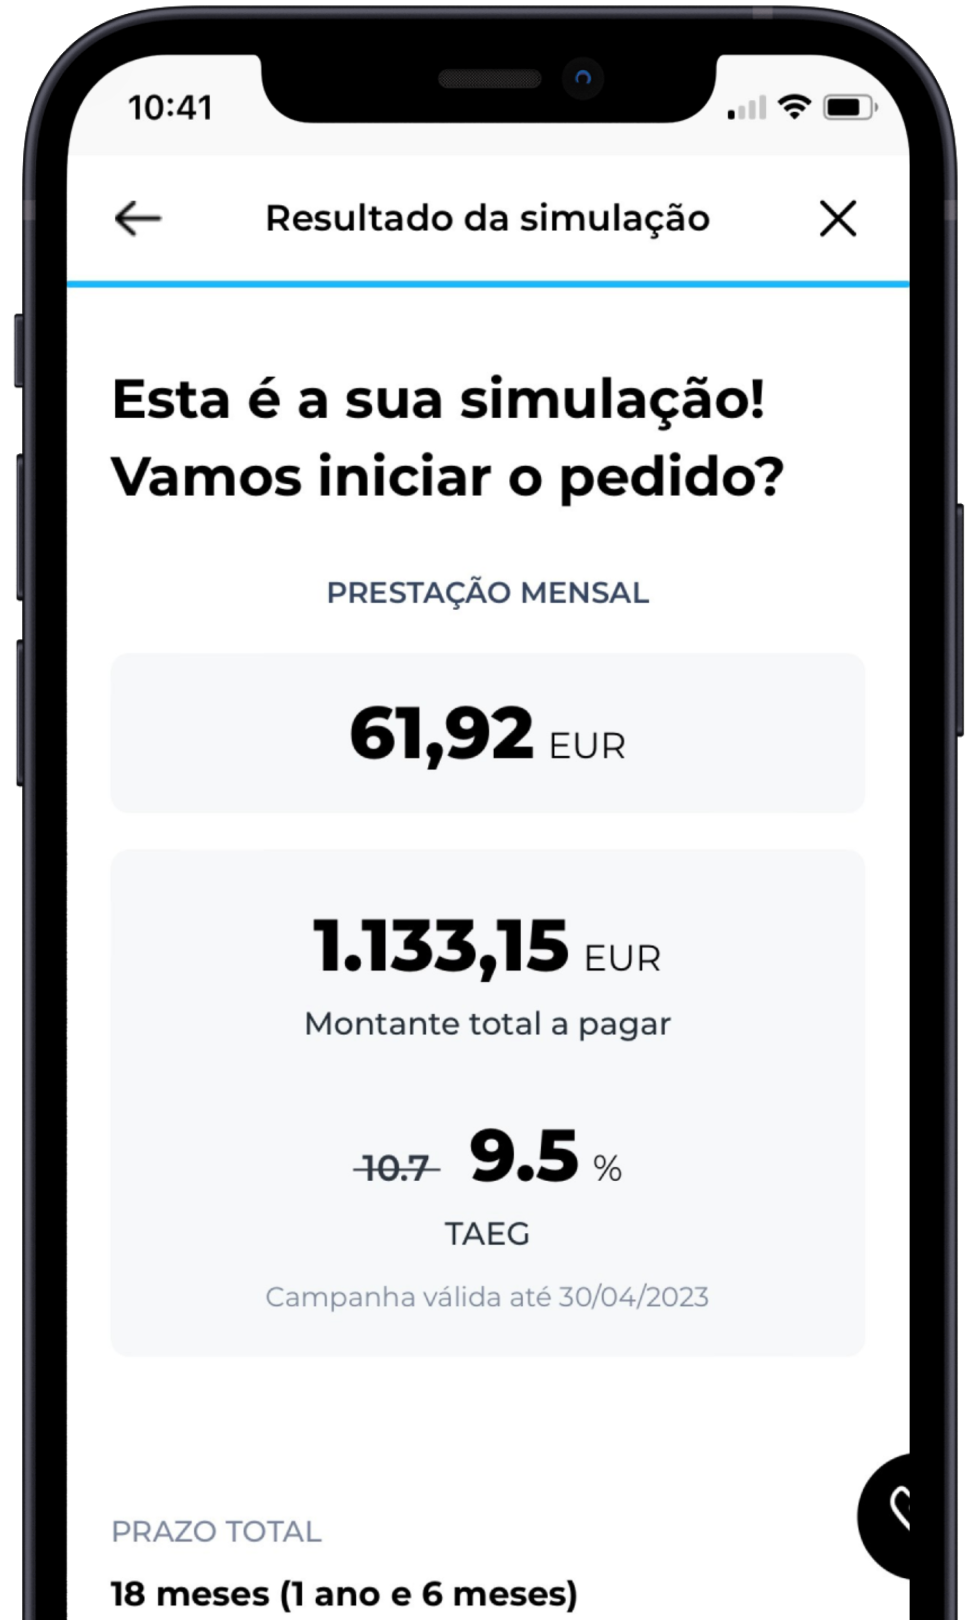 Aceda à App do ActivoBank para controlar a evolução dos seus pagamentos